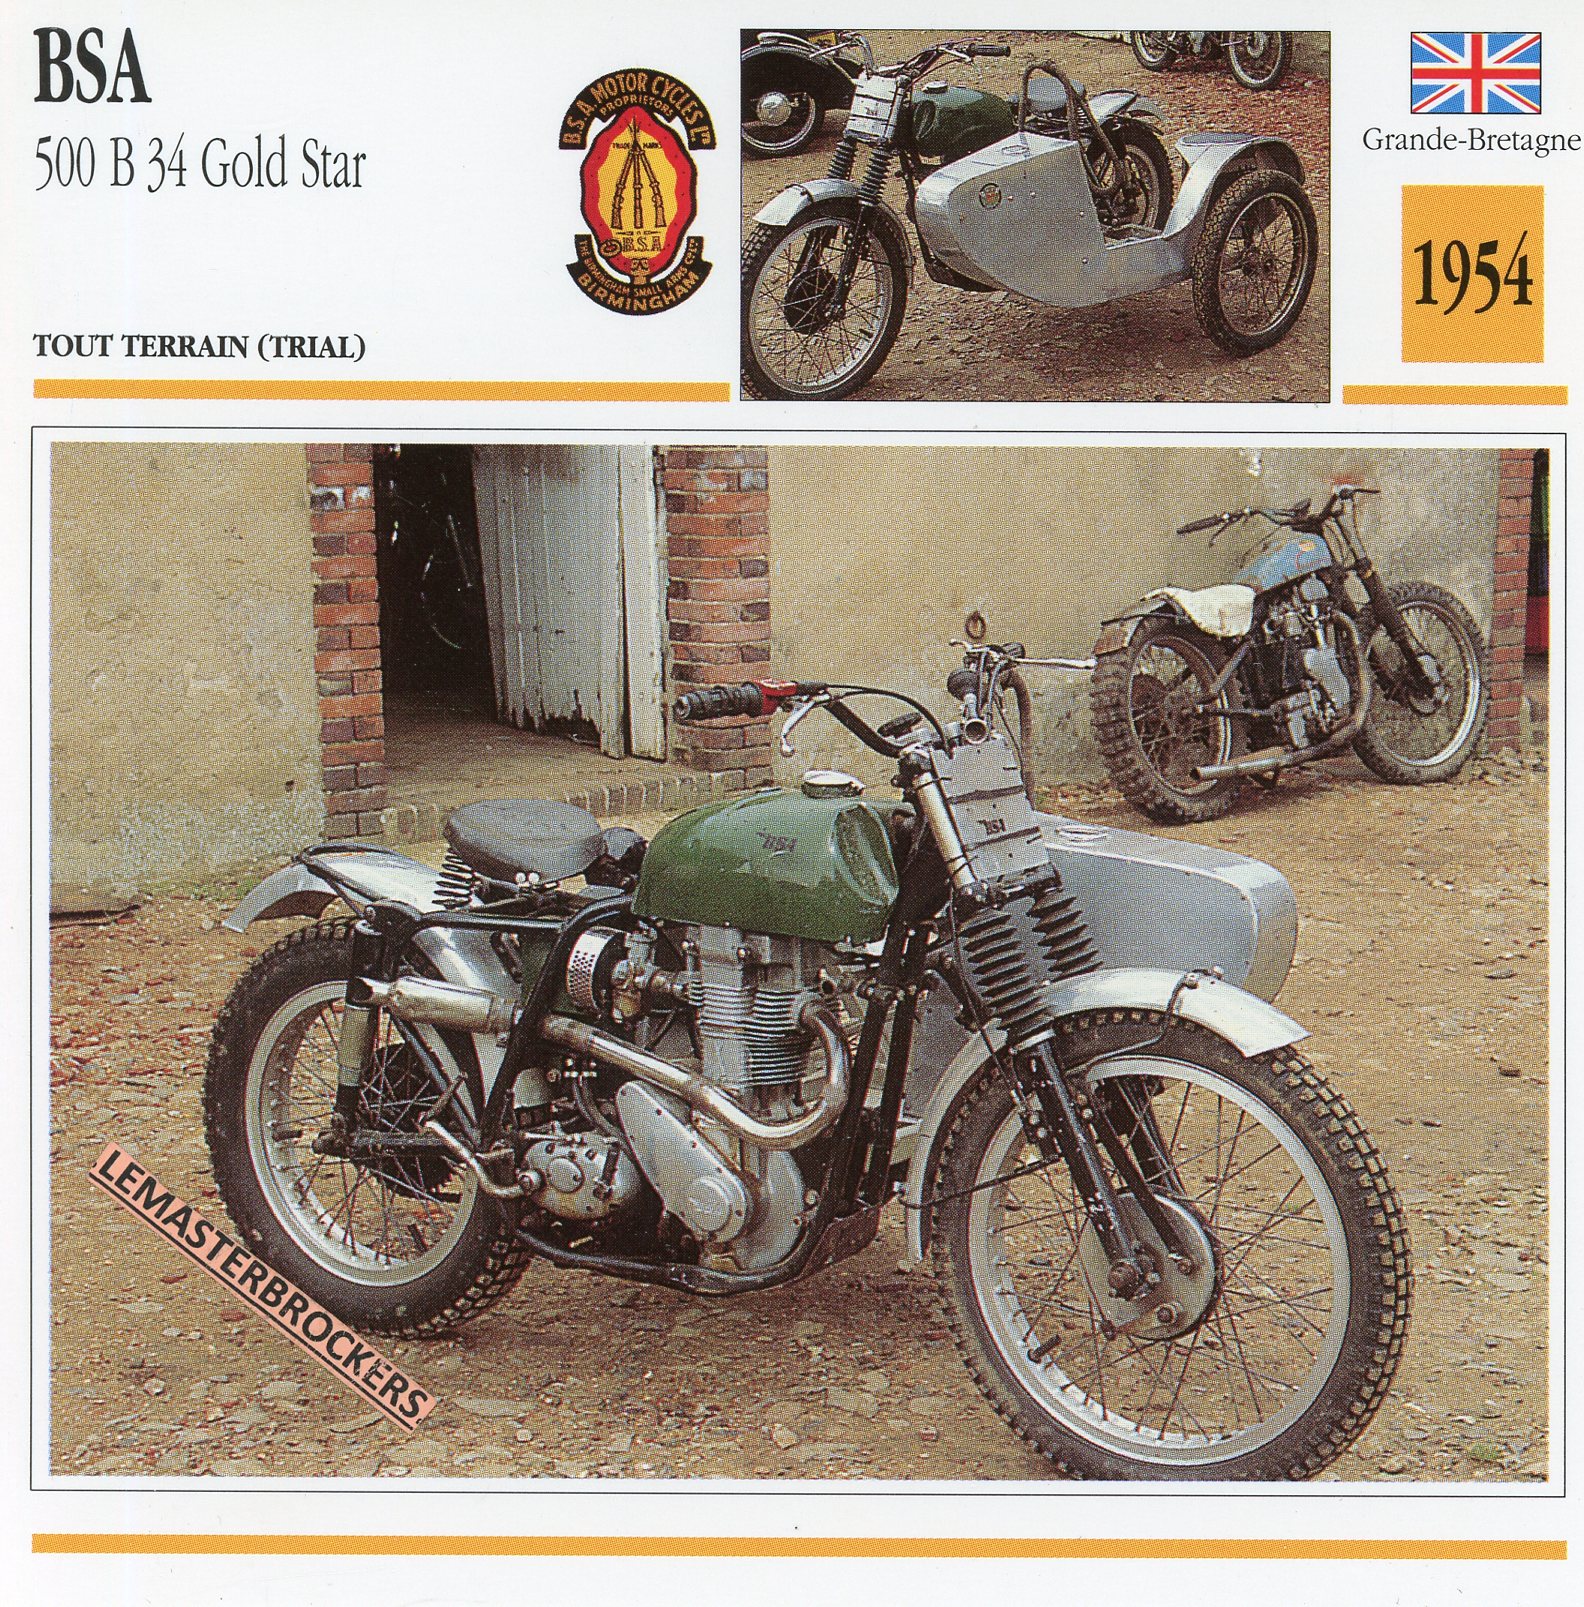 BSA-500-B34-GOLD-STAR-1954-FICHE-MOTO-CARDS-ATLAS-LEMASTERBROCKERS